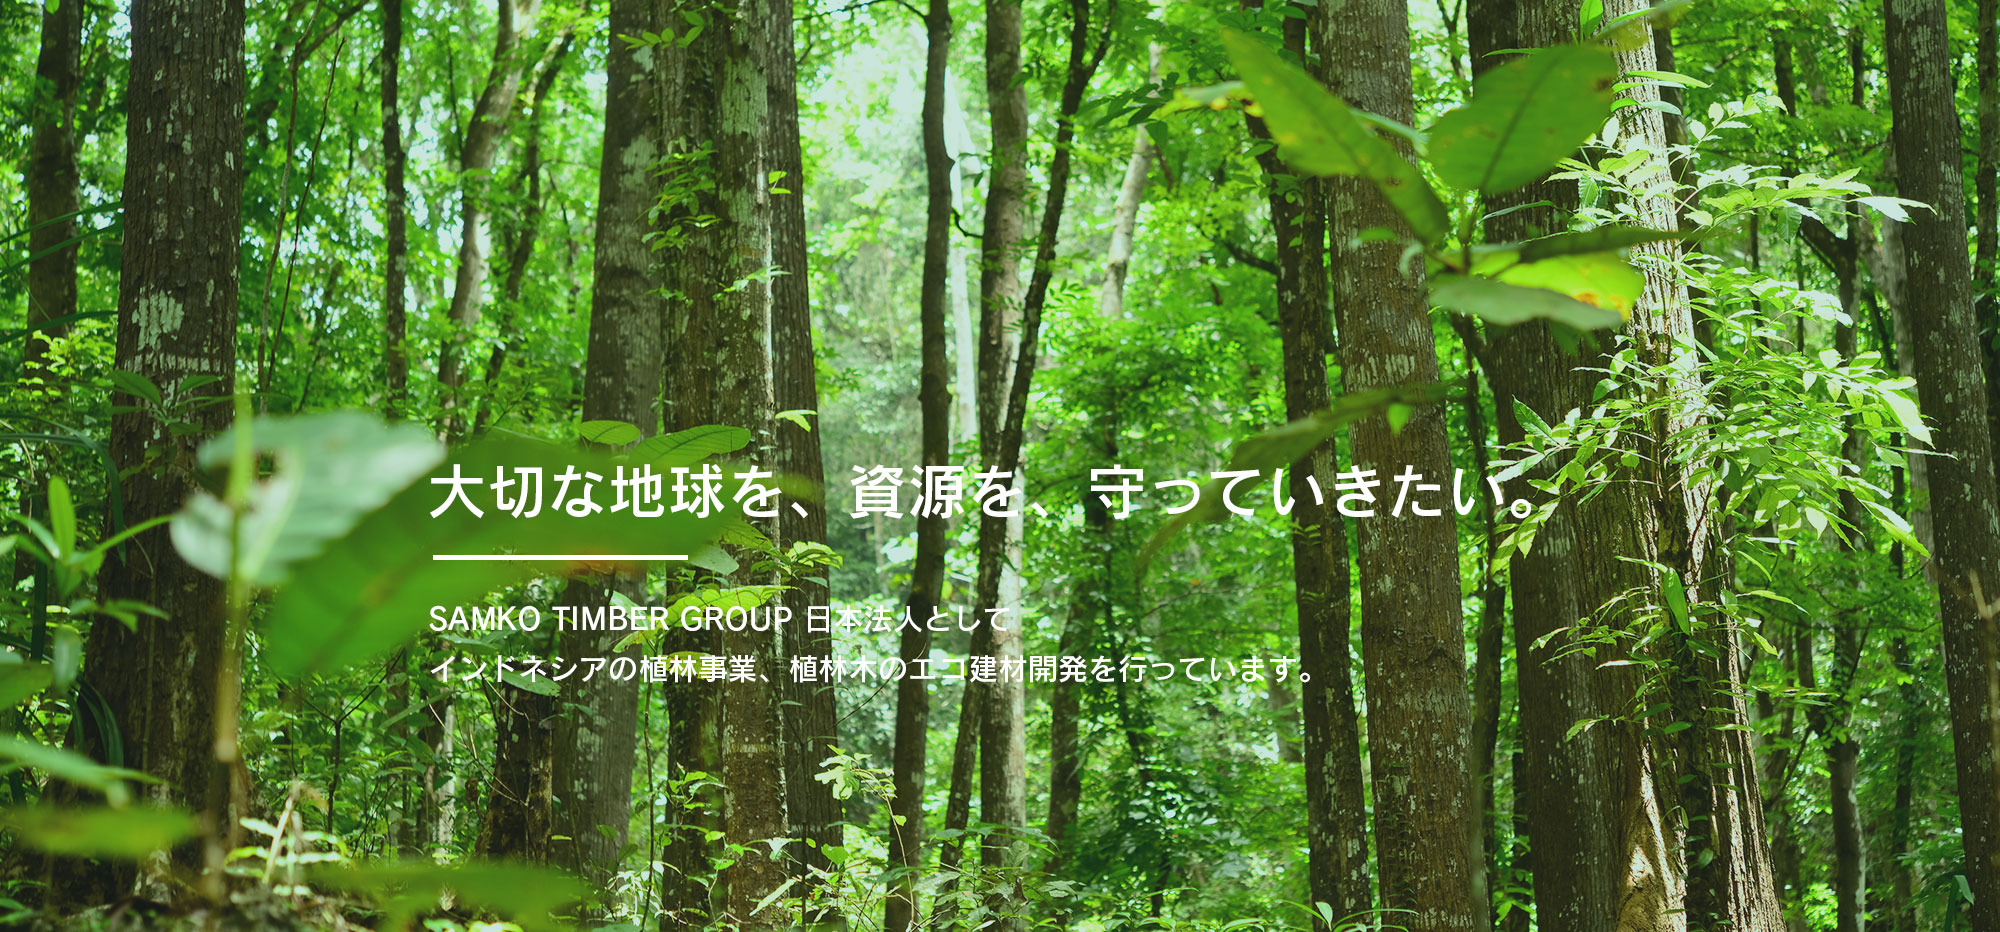 大切な地球を、資源を、守っていきたい。SAMKO TIMBER GROUP 日本法人としてインドネシアの植林事業、植林木のエコ建材開発を行っています。